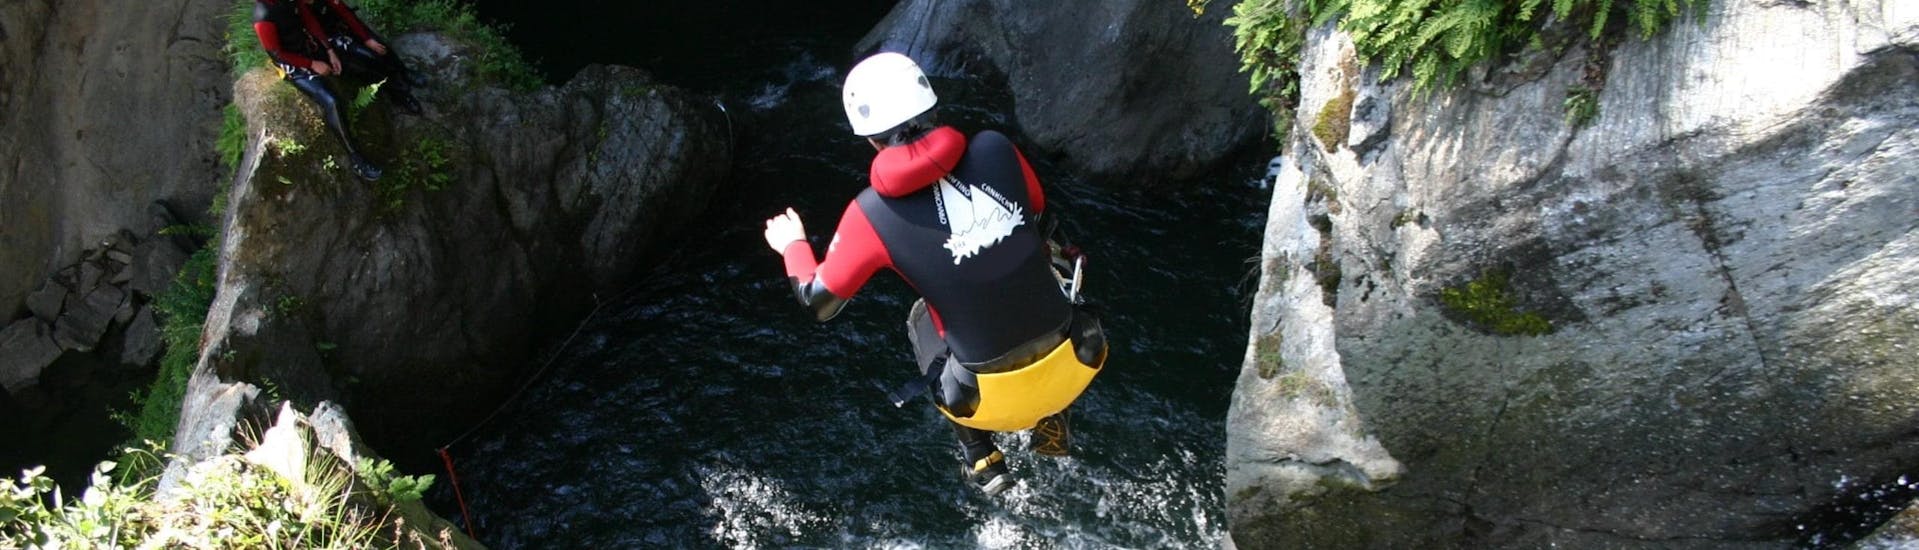 Een canyoneer springt van een waterval in een natuurlijke plas water tijdens de tour Canyoning in Obere Auerklamm in Ötztal voor sportieve beginners met CanKick Ötztal.